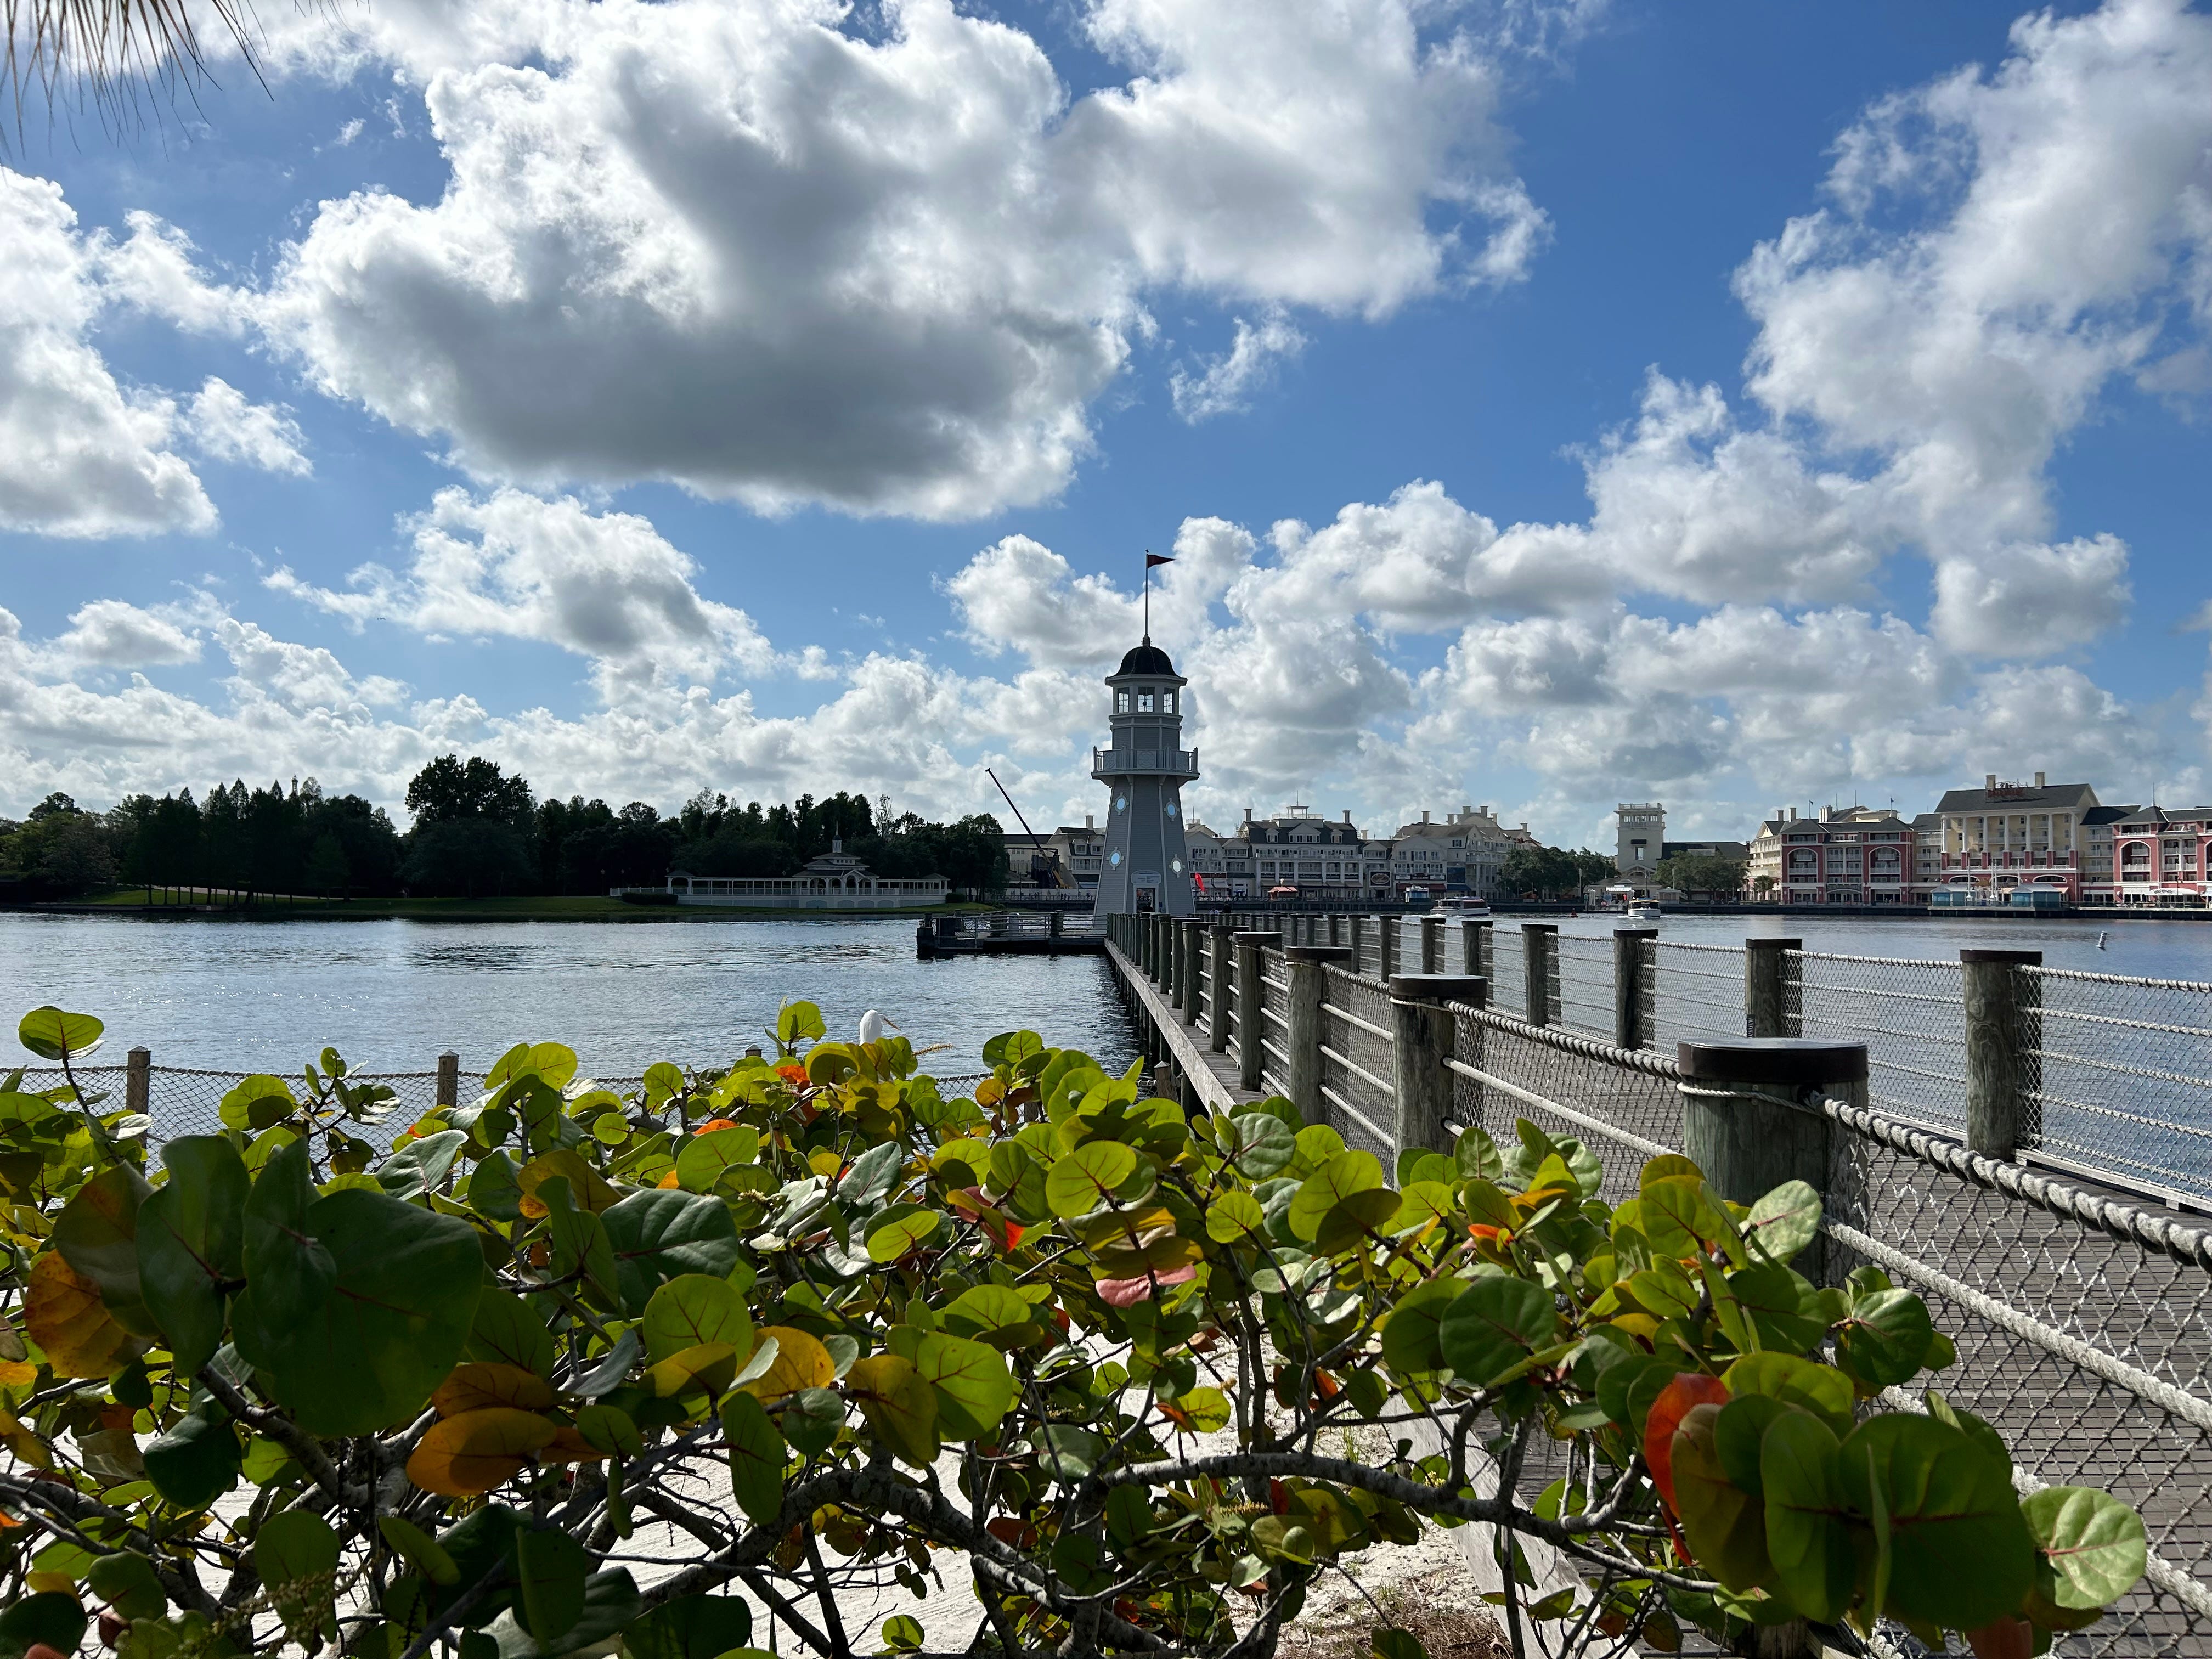 Blick auf Leuchtturm und Dock mit wolkenverhangenem blauen Himmel darüber